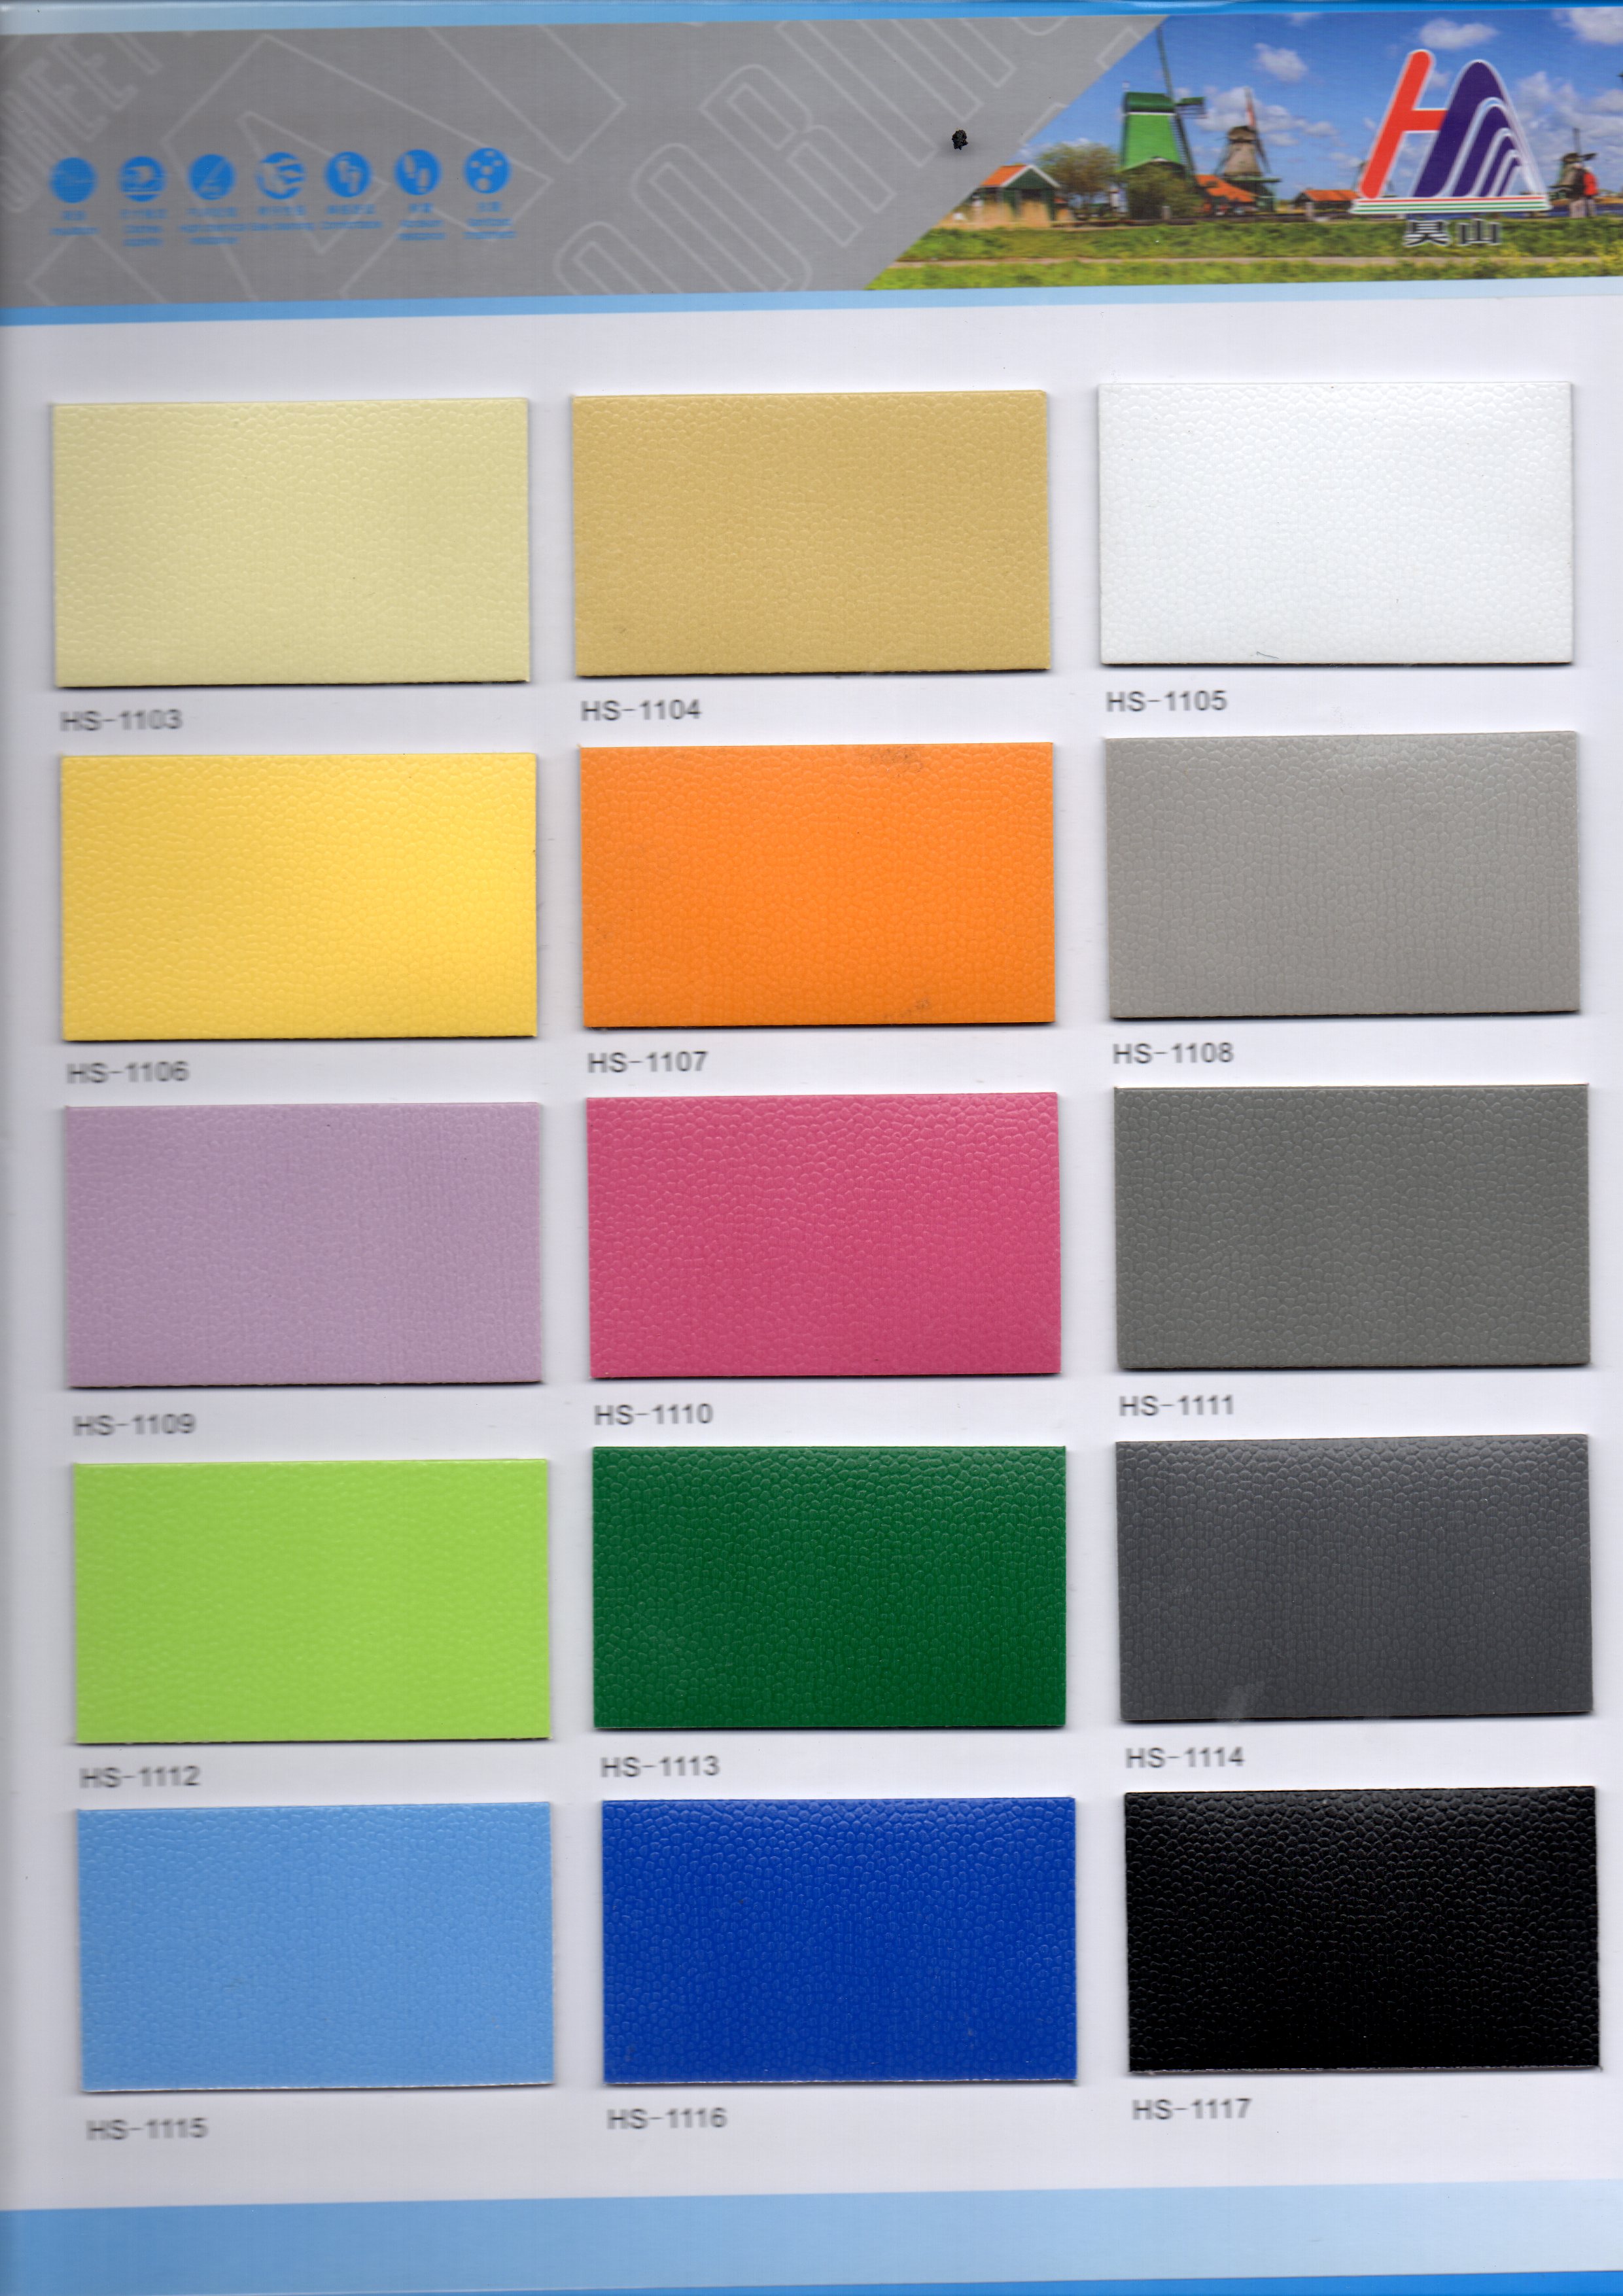 商用纯色塑胶地板 商用塑胶地板供应商 纯色商用塑胶地板图片